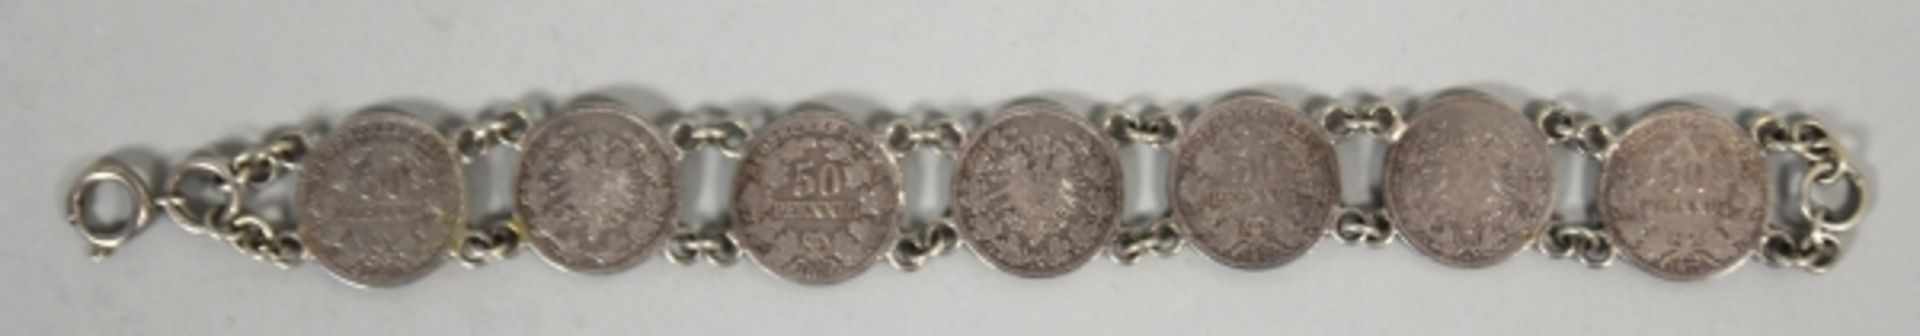 2 TEILE BURSCHENSCHAFT bestehend aus Armband mit 7 50-Pfennig Münzen u. farbiges Band mit Silber- - Image 2 of 3